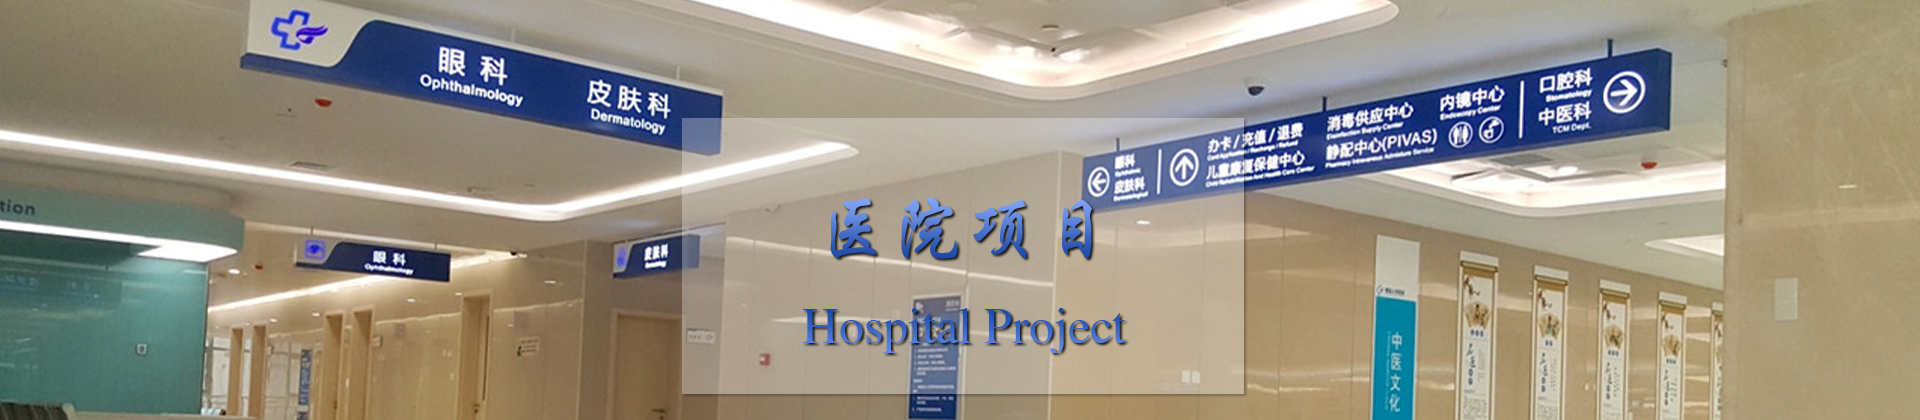 武汉医院标识标牌导视系统设计制作厂家-中涵标识